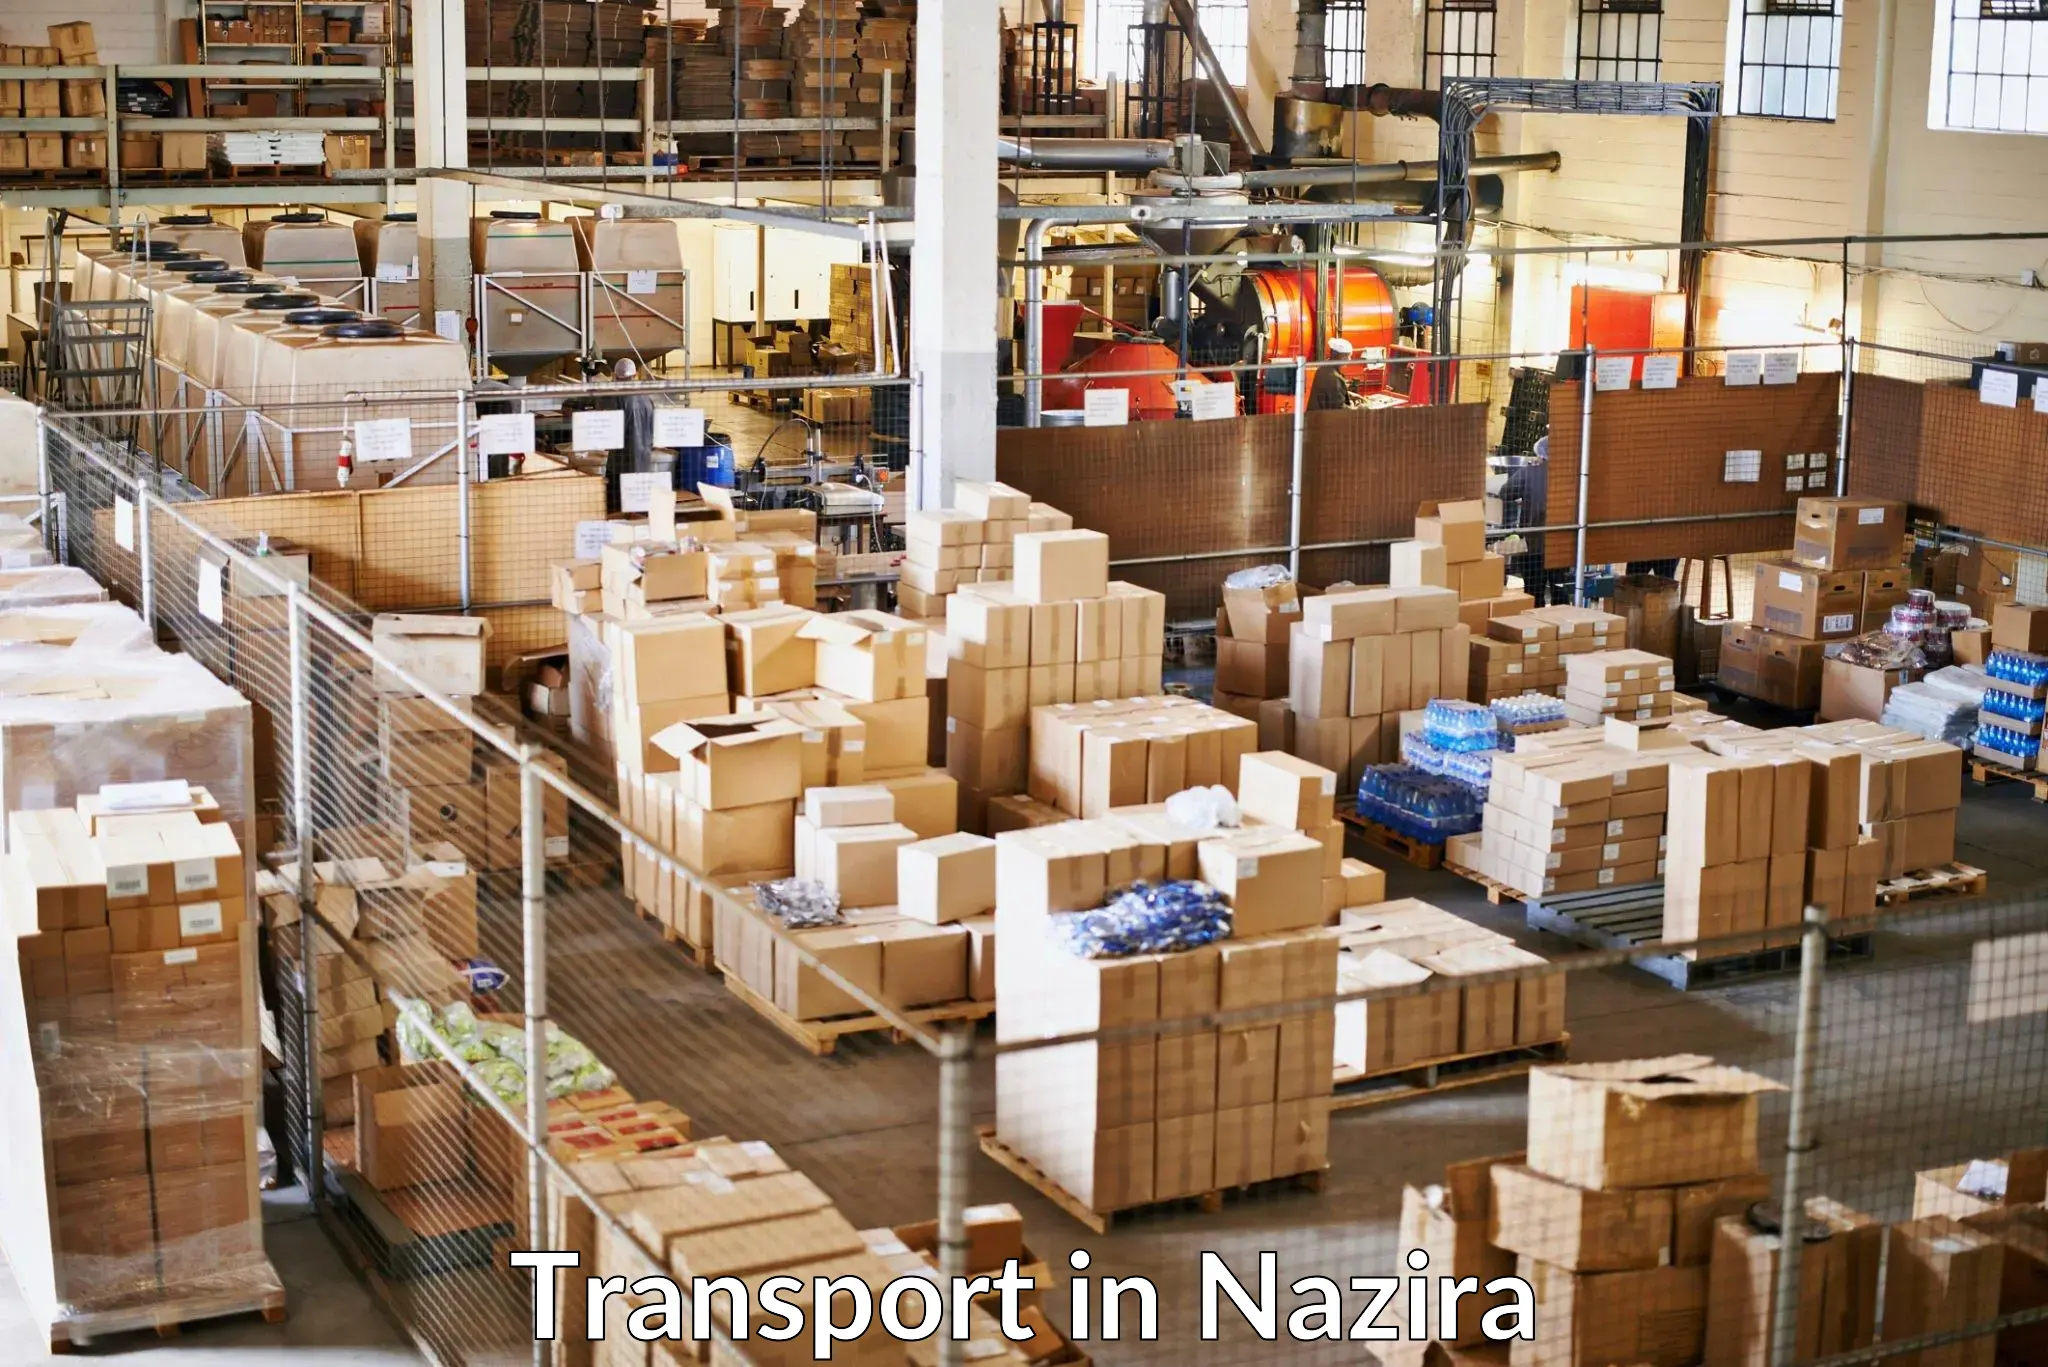 Furniture transport service in Nazira